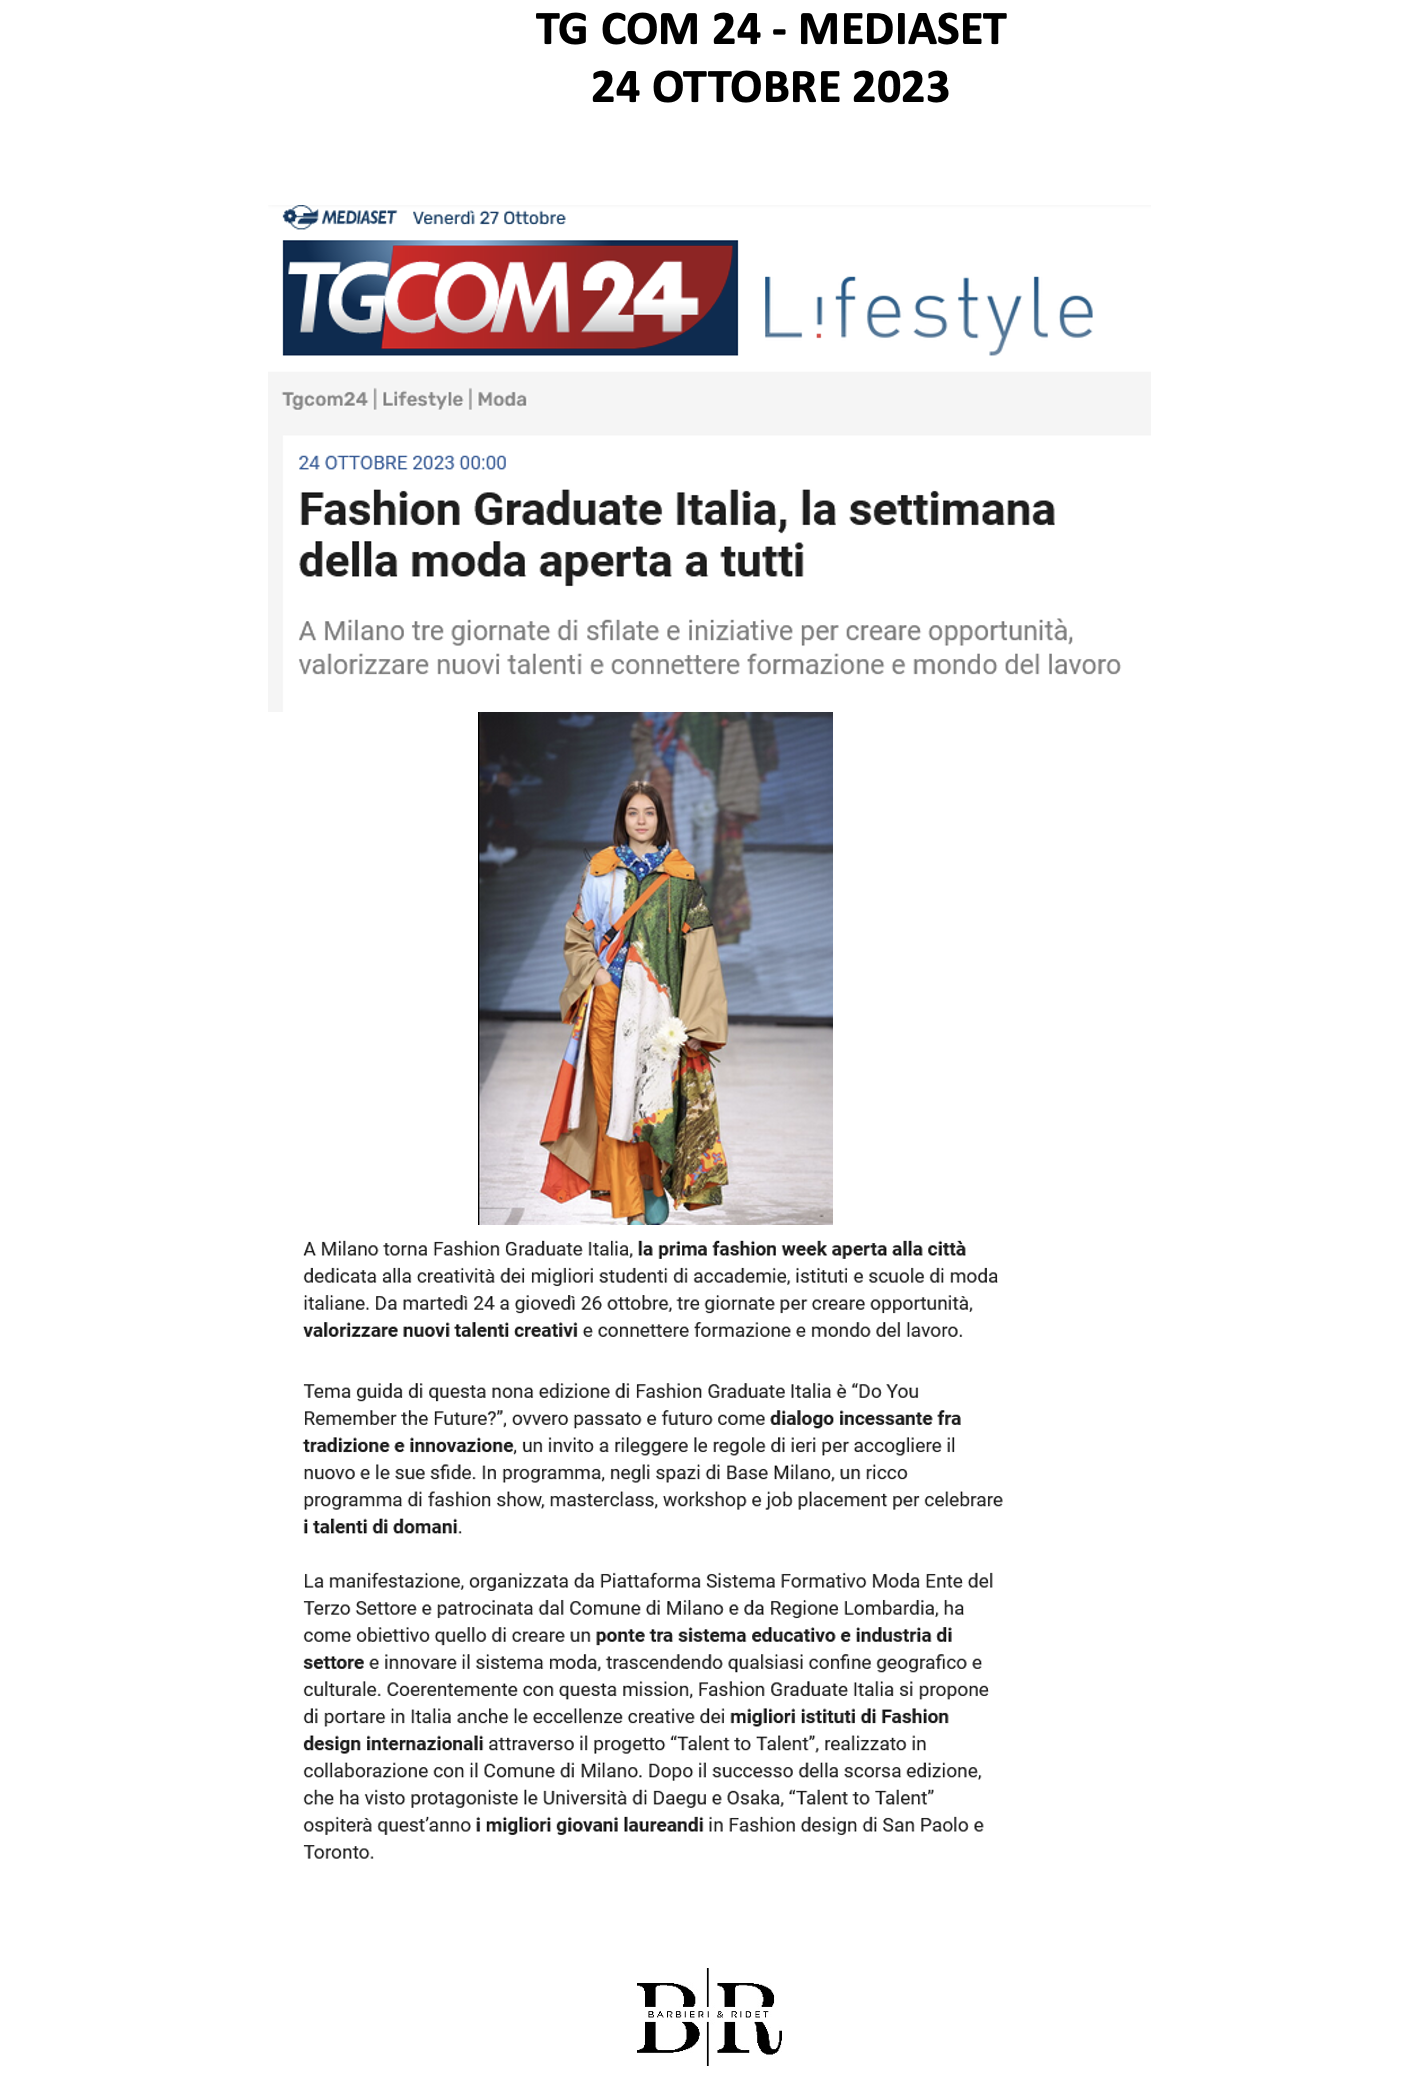 Fashion Graduate Italia, la settimana della moda aperta a tutti ENG